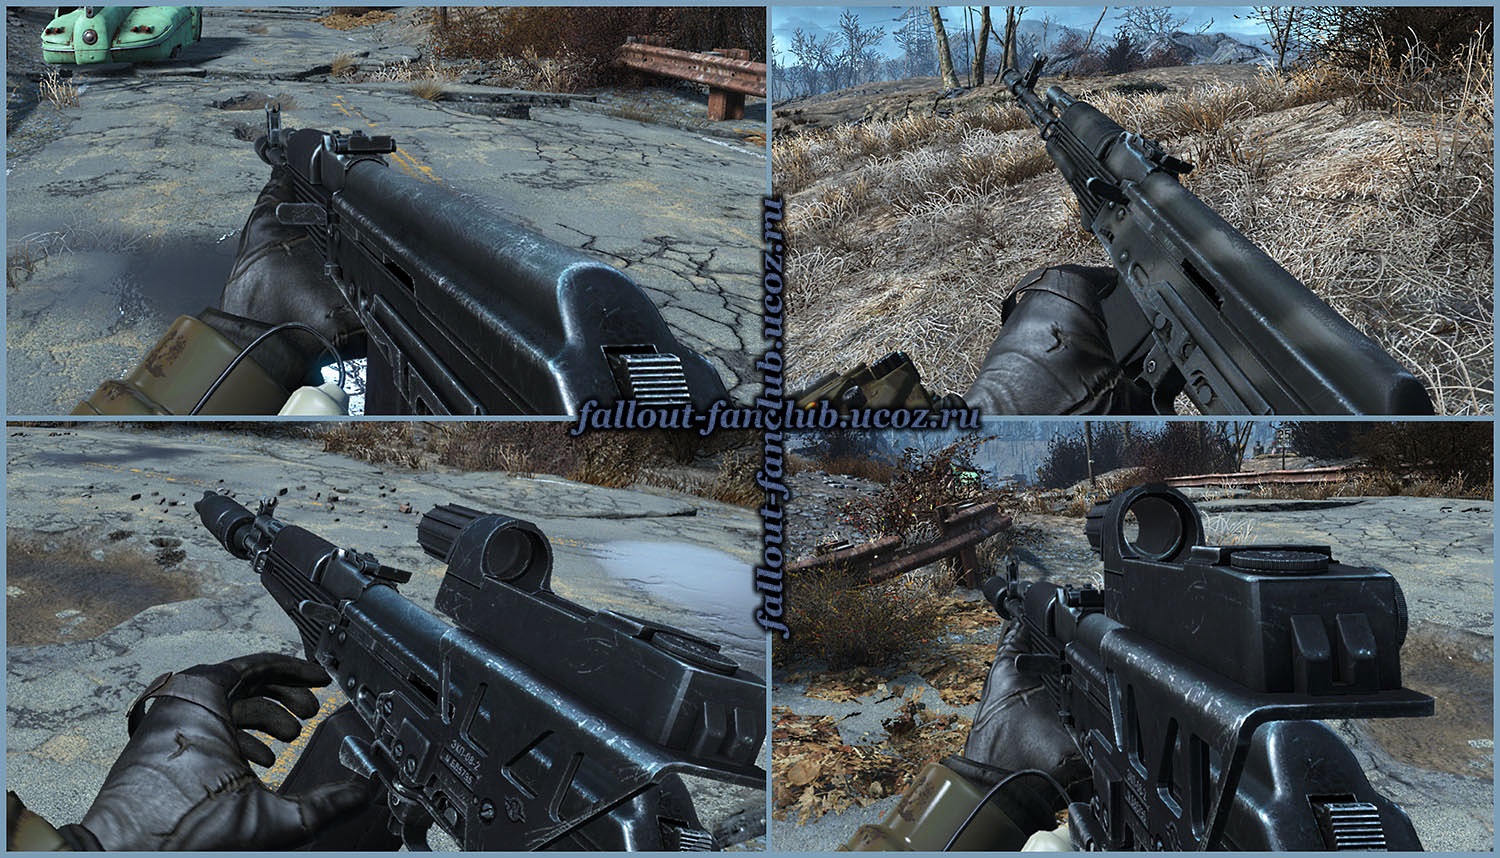 Ak74m assault rifle для fallout 4 фото 29